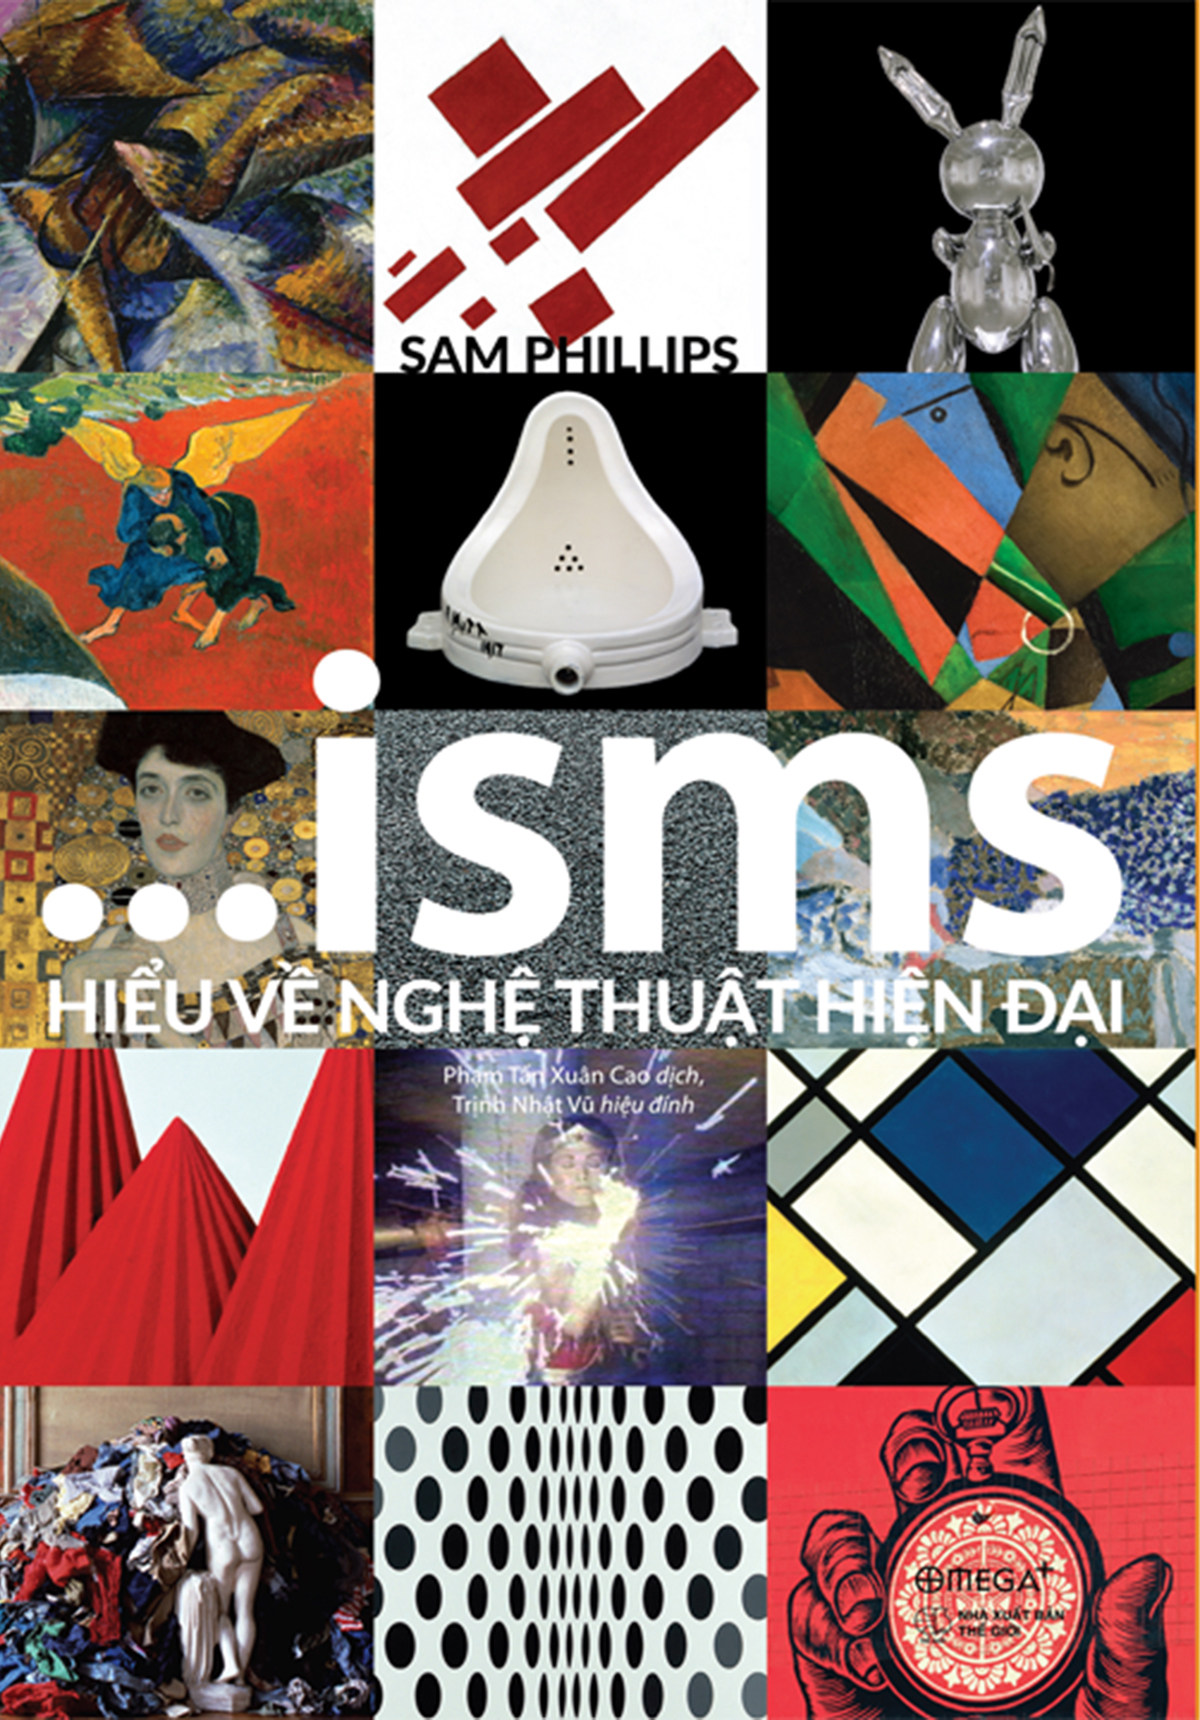 Bìa sách ...isms Hiểu về nghệ thuật hiện đại của  Sam Phillips. Ảnh: Omega Plus.